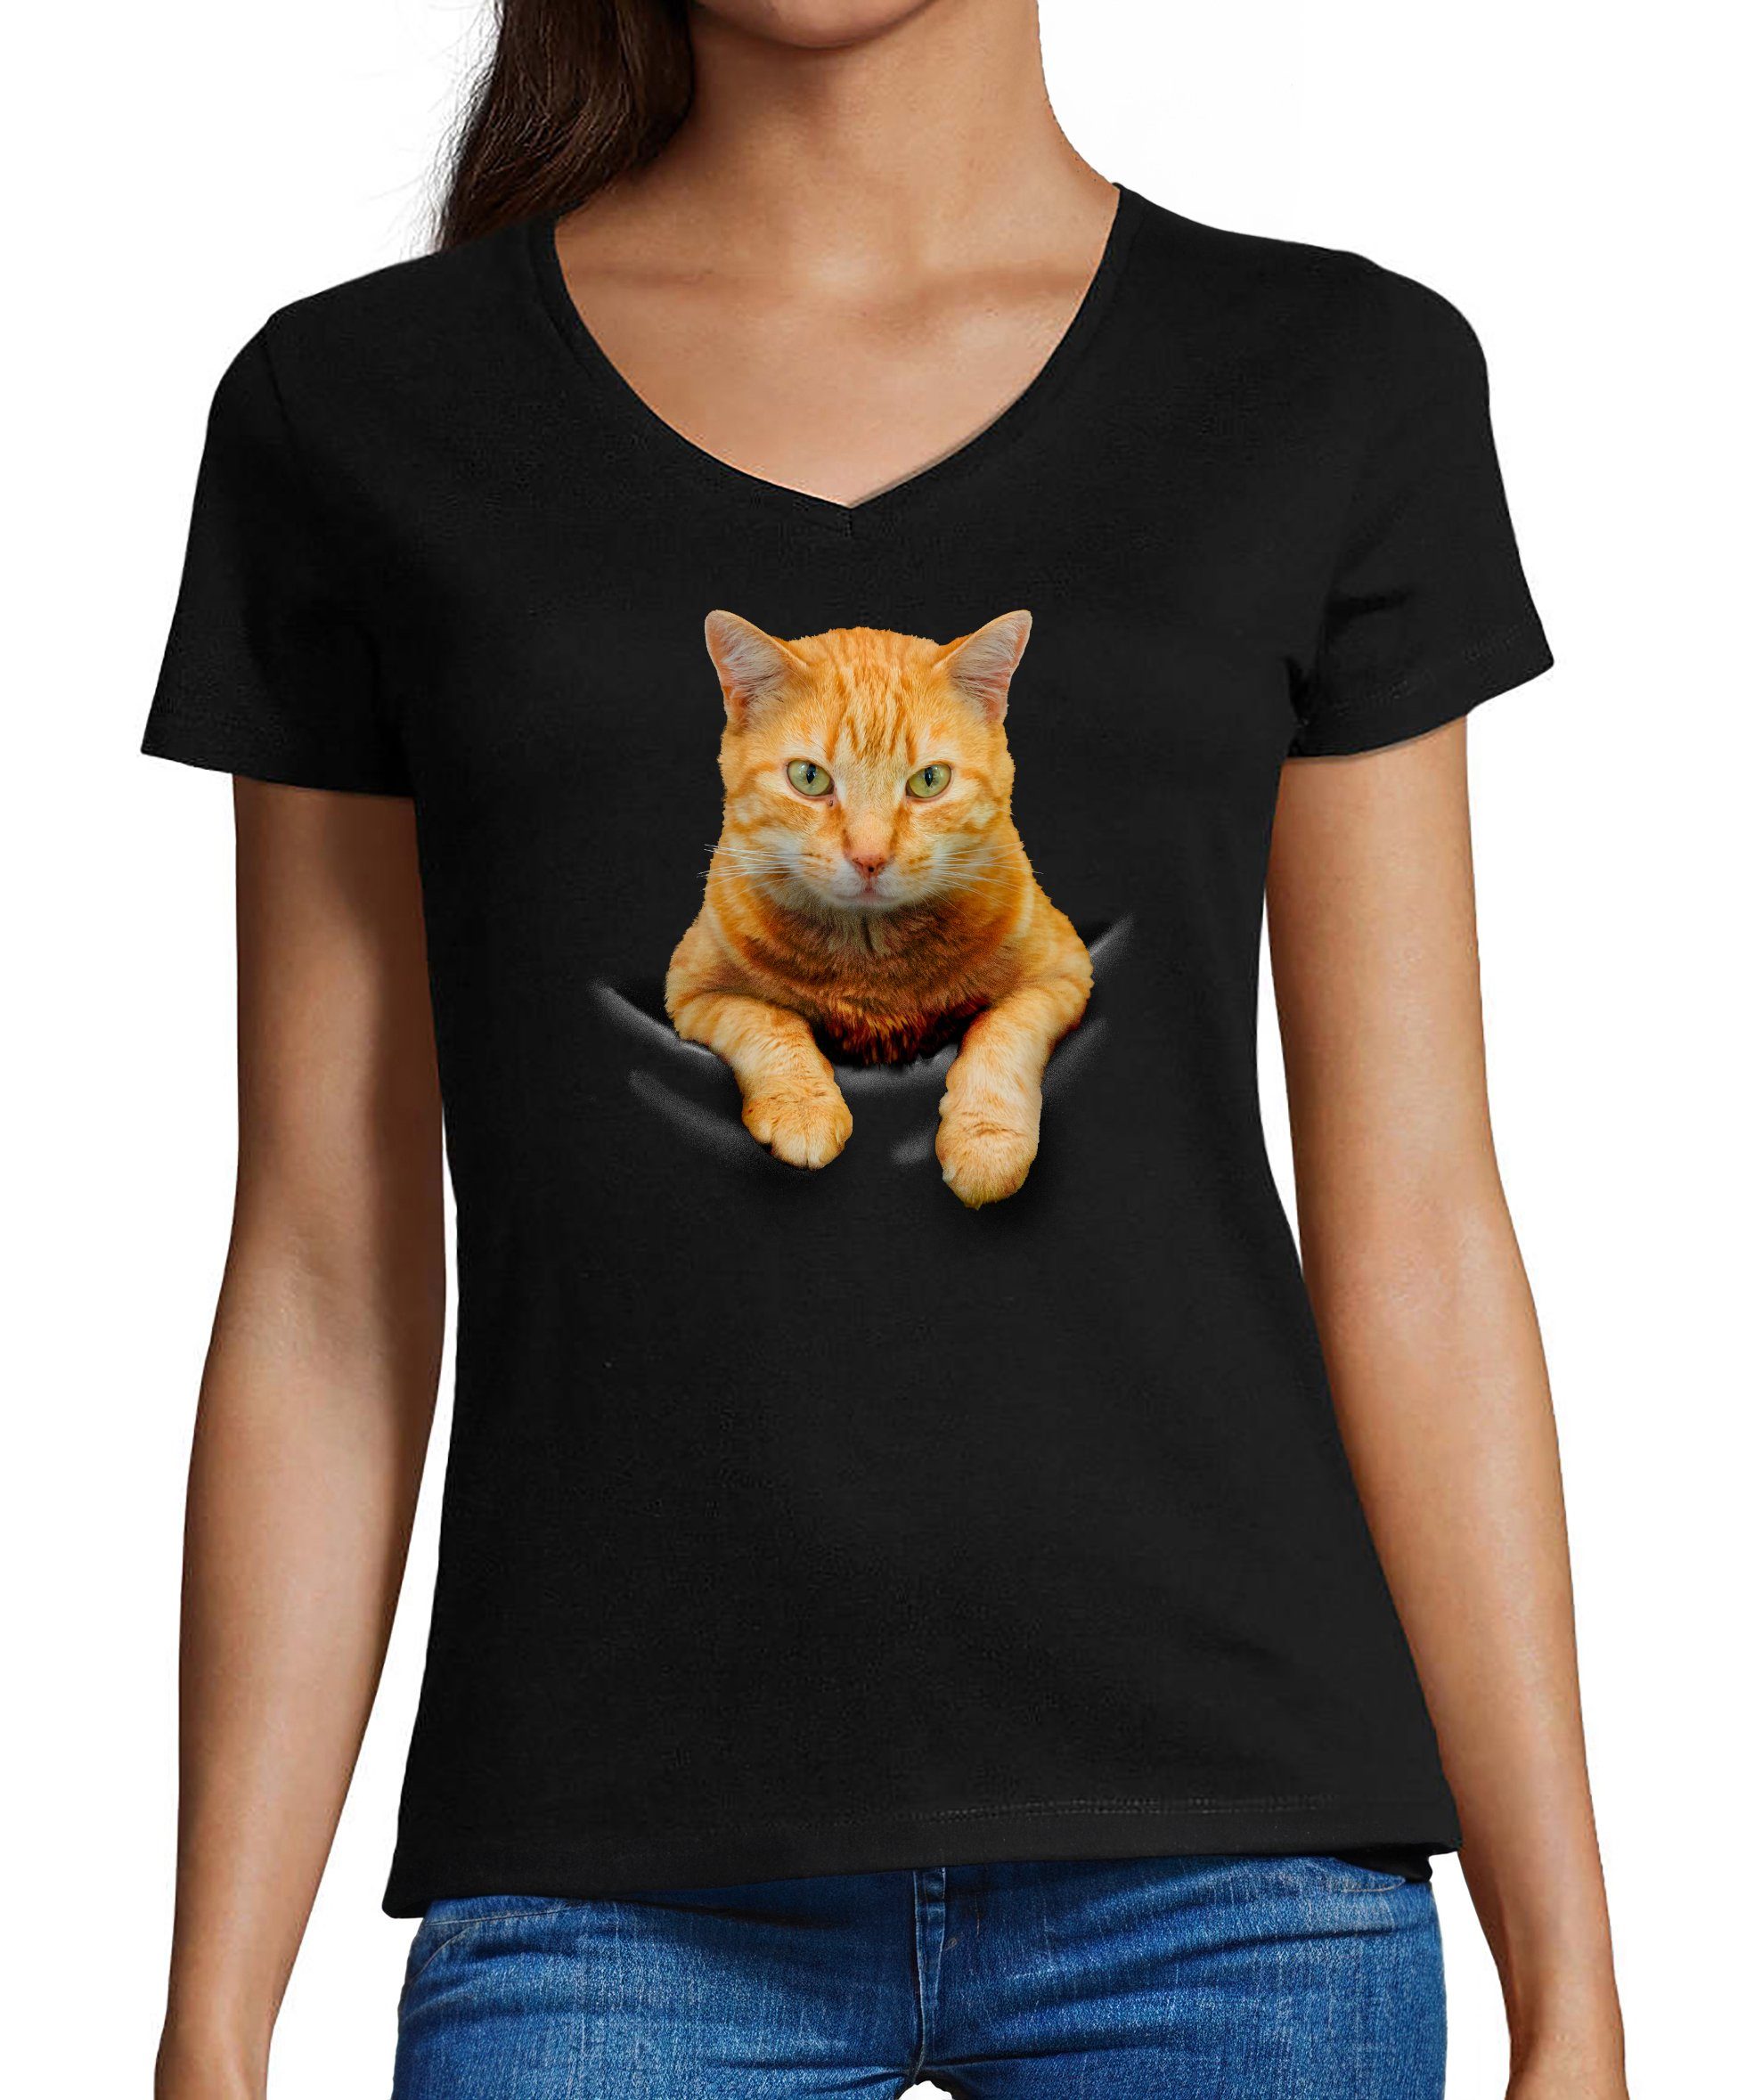 MyDesign24 T-Shirt Damen Katzen Print Shirt bedruckt - Gelbe Katze in der Tasche Slim Fit, i109, Baumwollshirt mit Aufdruck